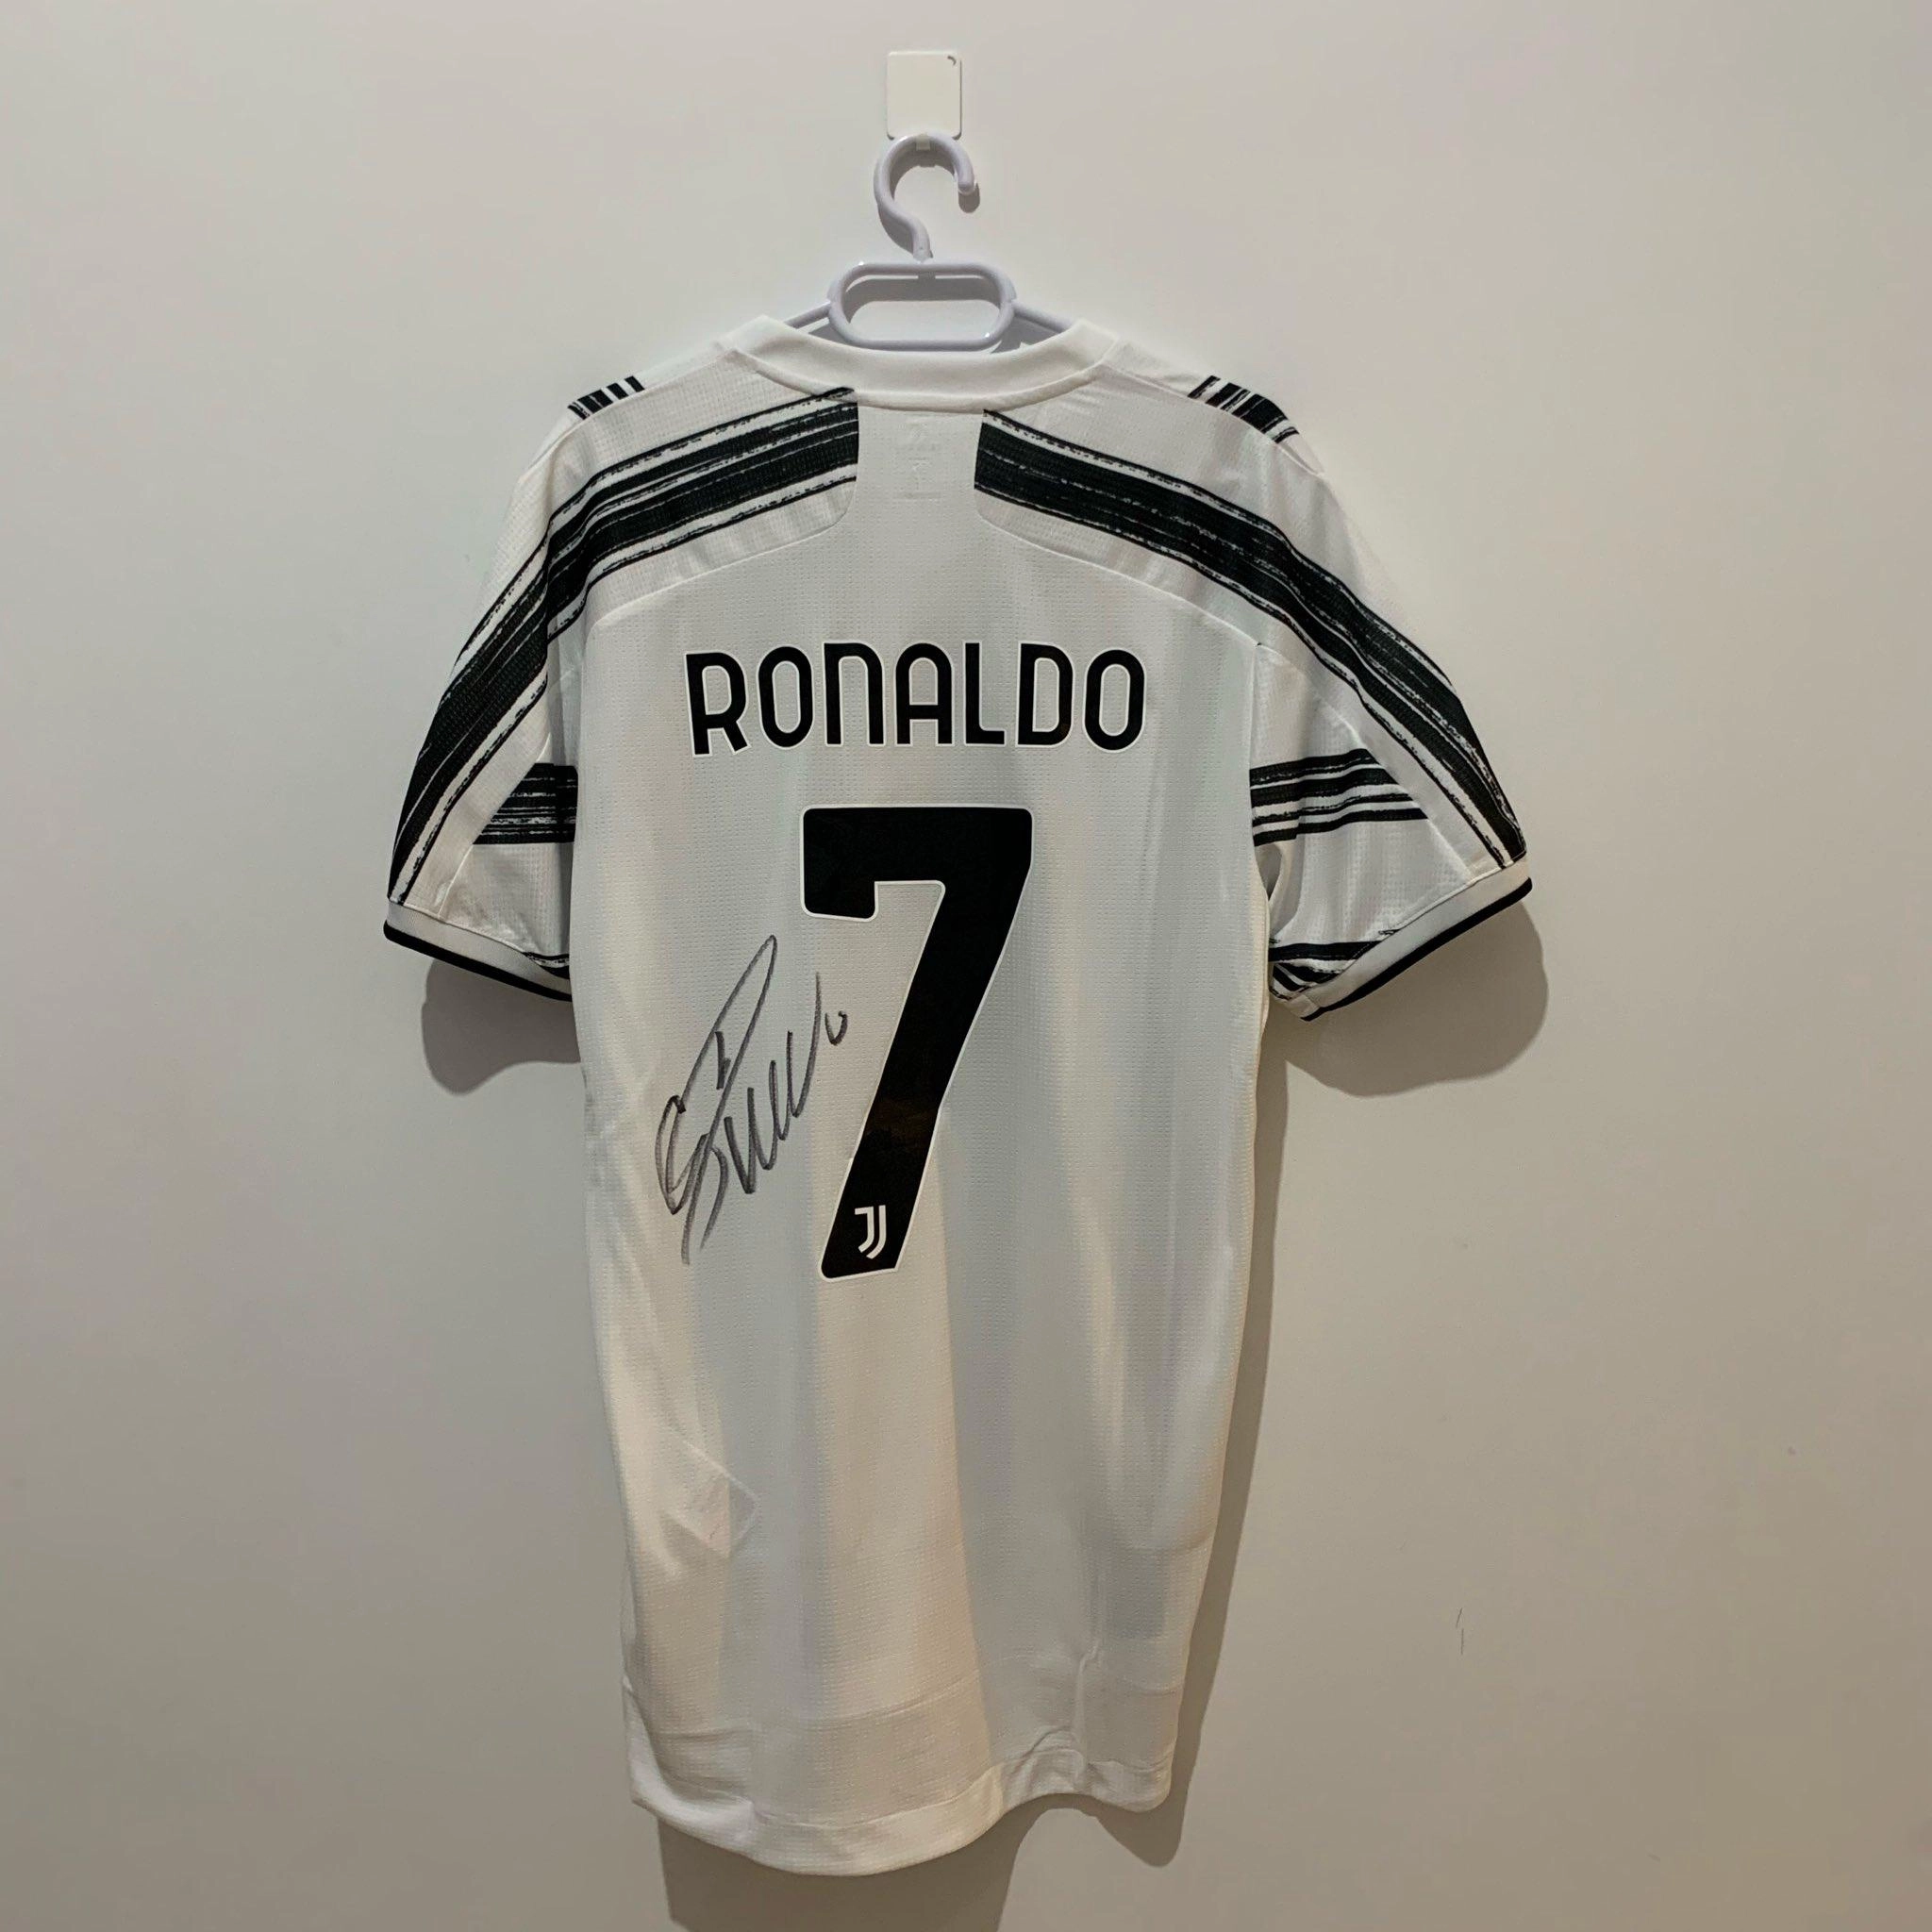 Merih Demiral zəlzələ qurbanlarına görə Ronaldonun formasını hərraca çıxarıb